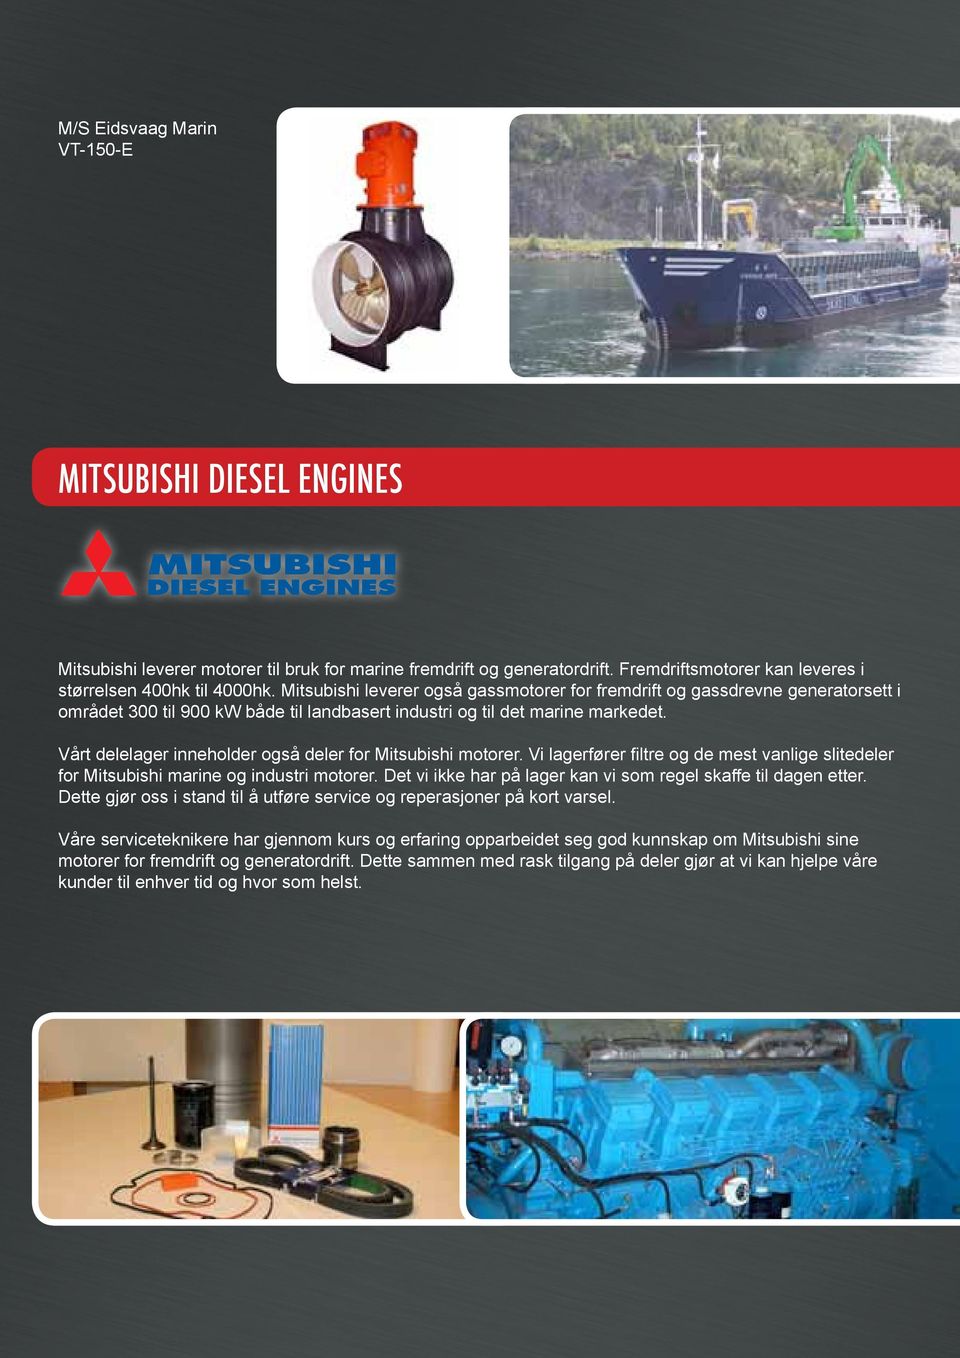 Vårt delelager inneholder også deler for Mitsubishi motorer. Vi lagerfører filtre og de mest vanlige slitedeler for Mitsubishi marine og industri motorer.